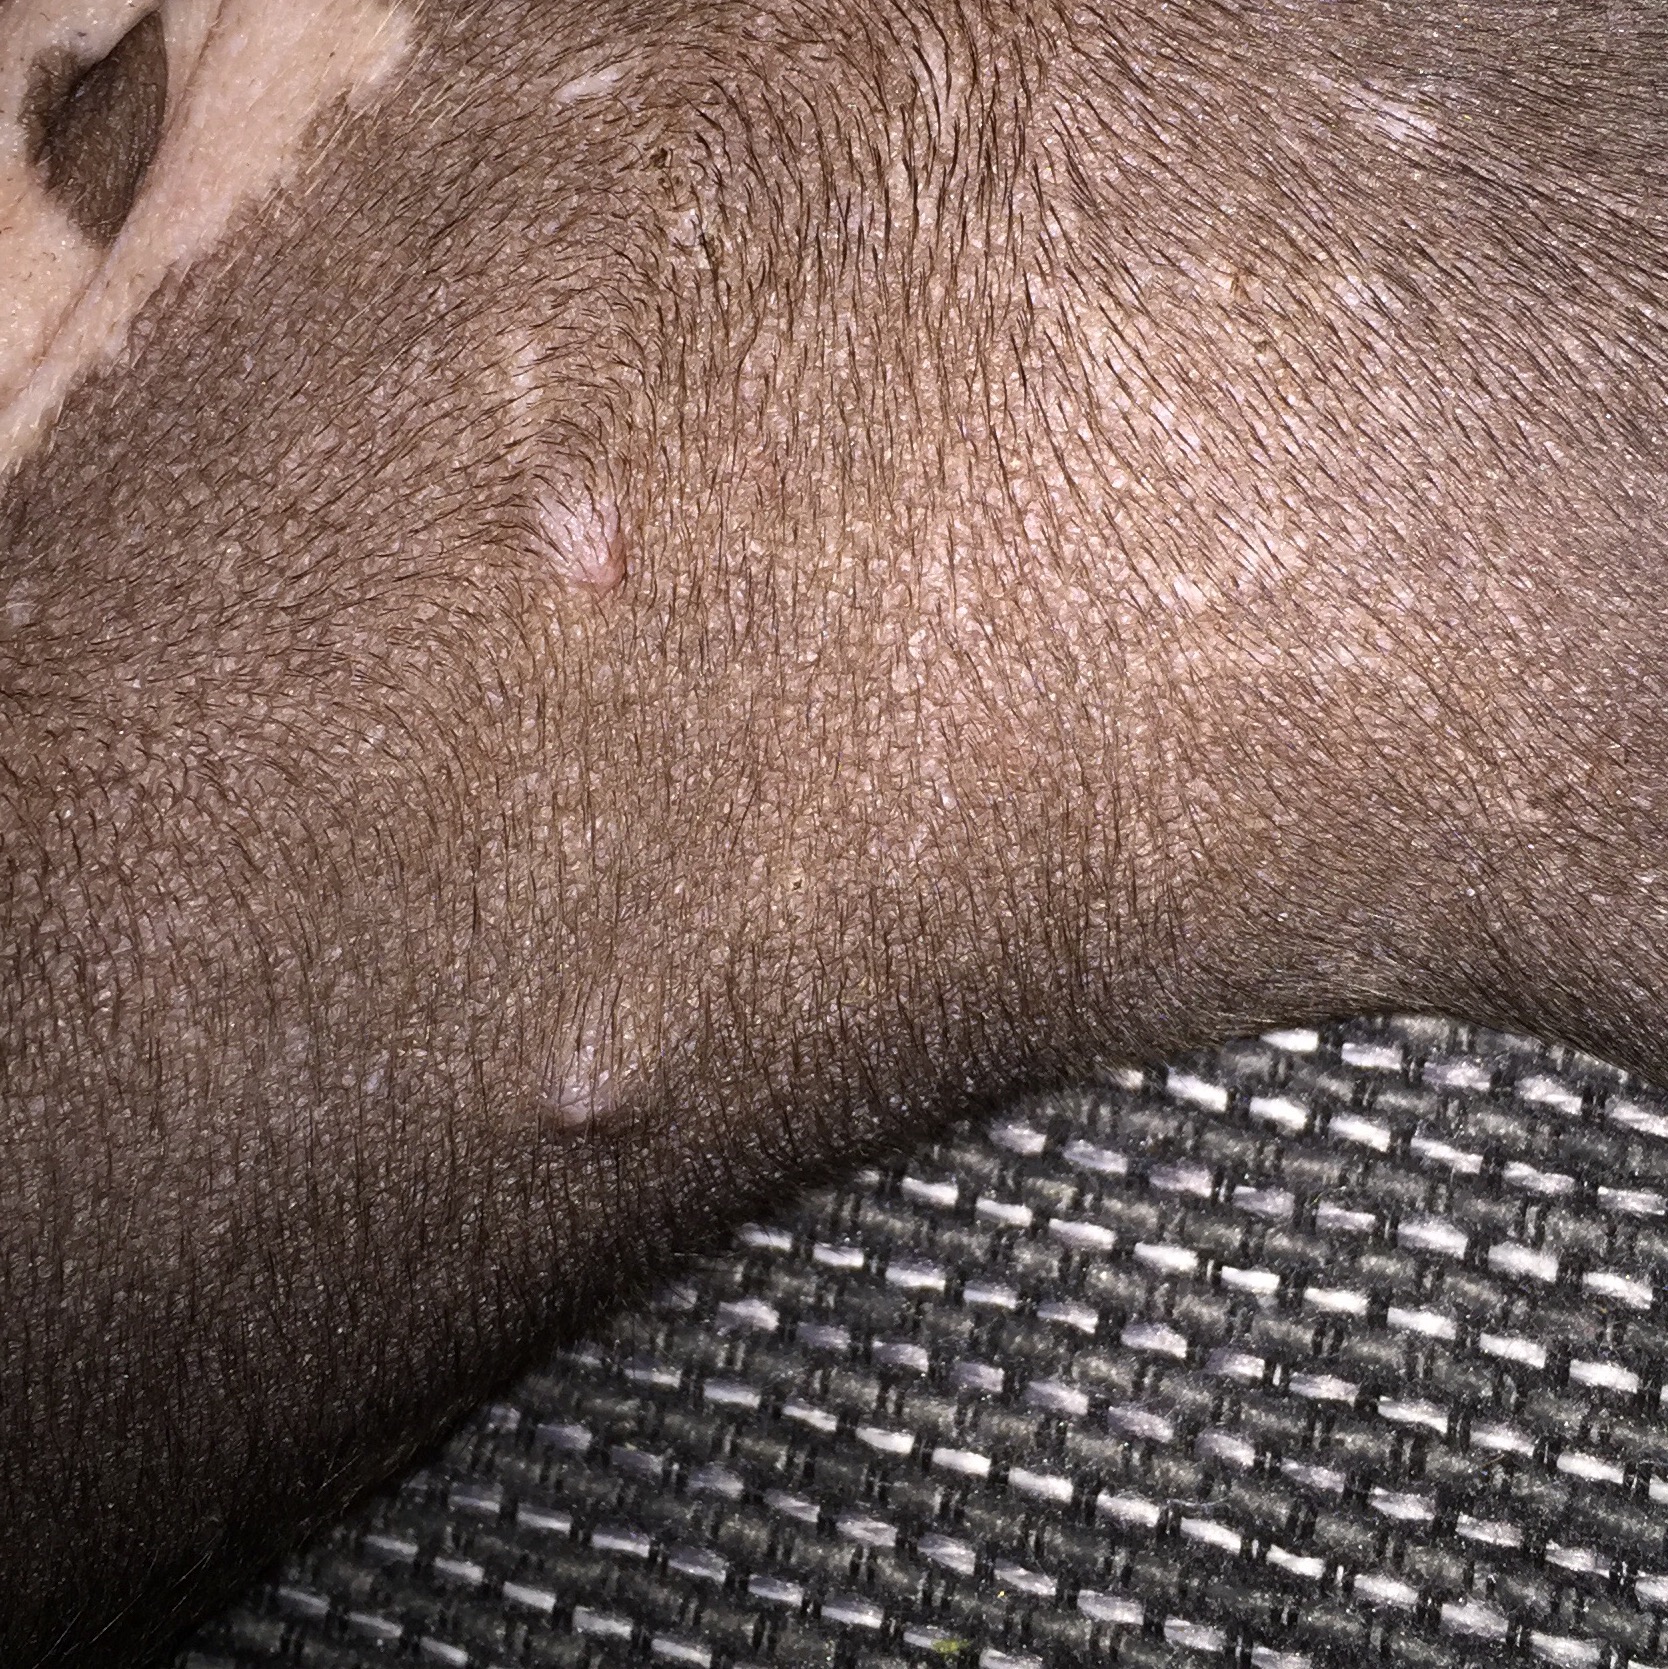 Mein Welpe hat Knubbel unter der Haut? (Gesundheit und Medizin, Beauty